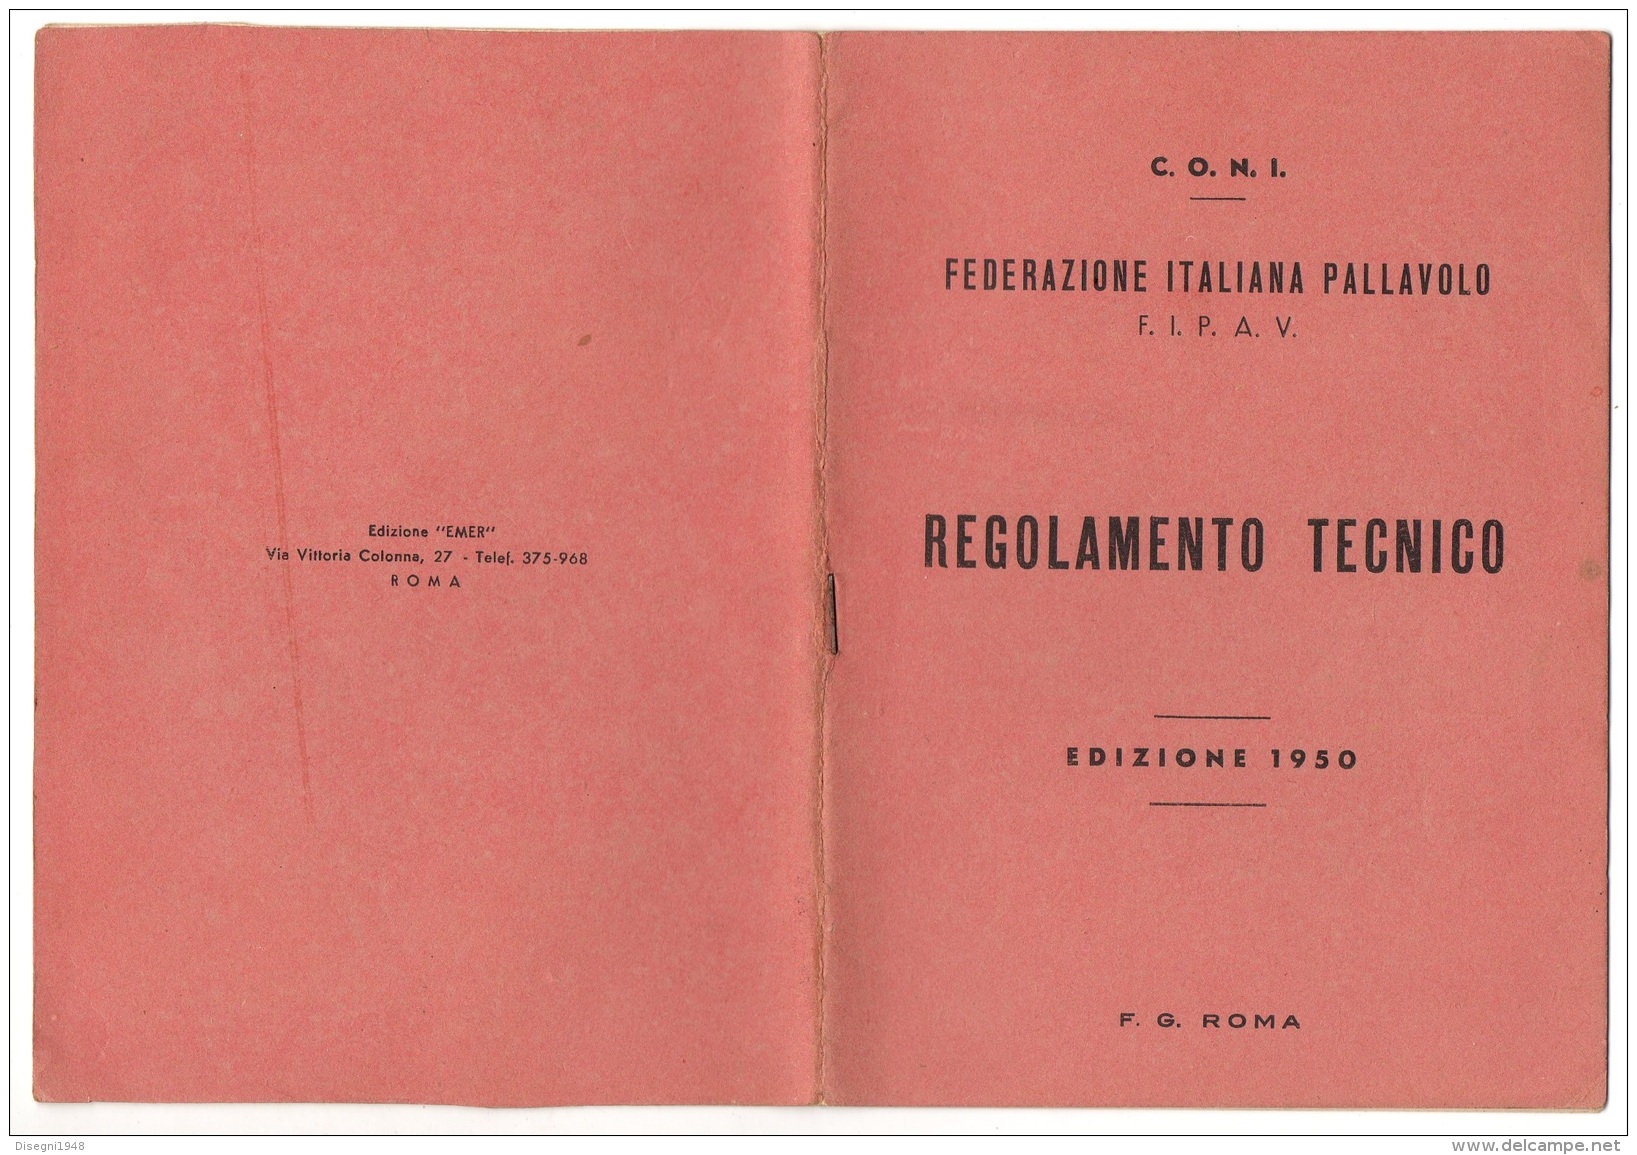 05389 "C.O.N.I. - F.I.P.A.V. - FEDERAZIONE ITALIANA PALLAVOLO - REGOLAMENTO TECNICO - EDIZIONE 1950" ORIGINALE - Sport